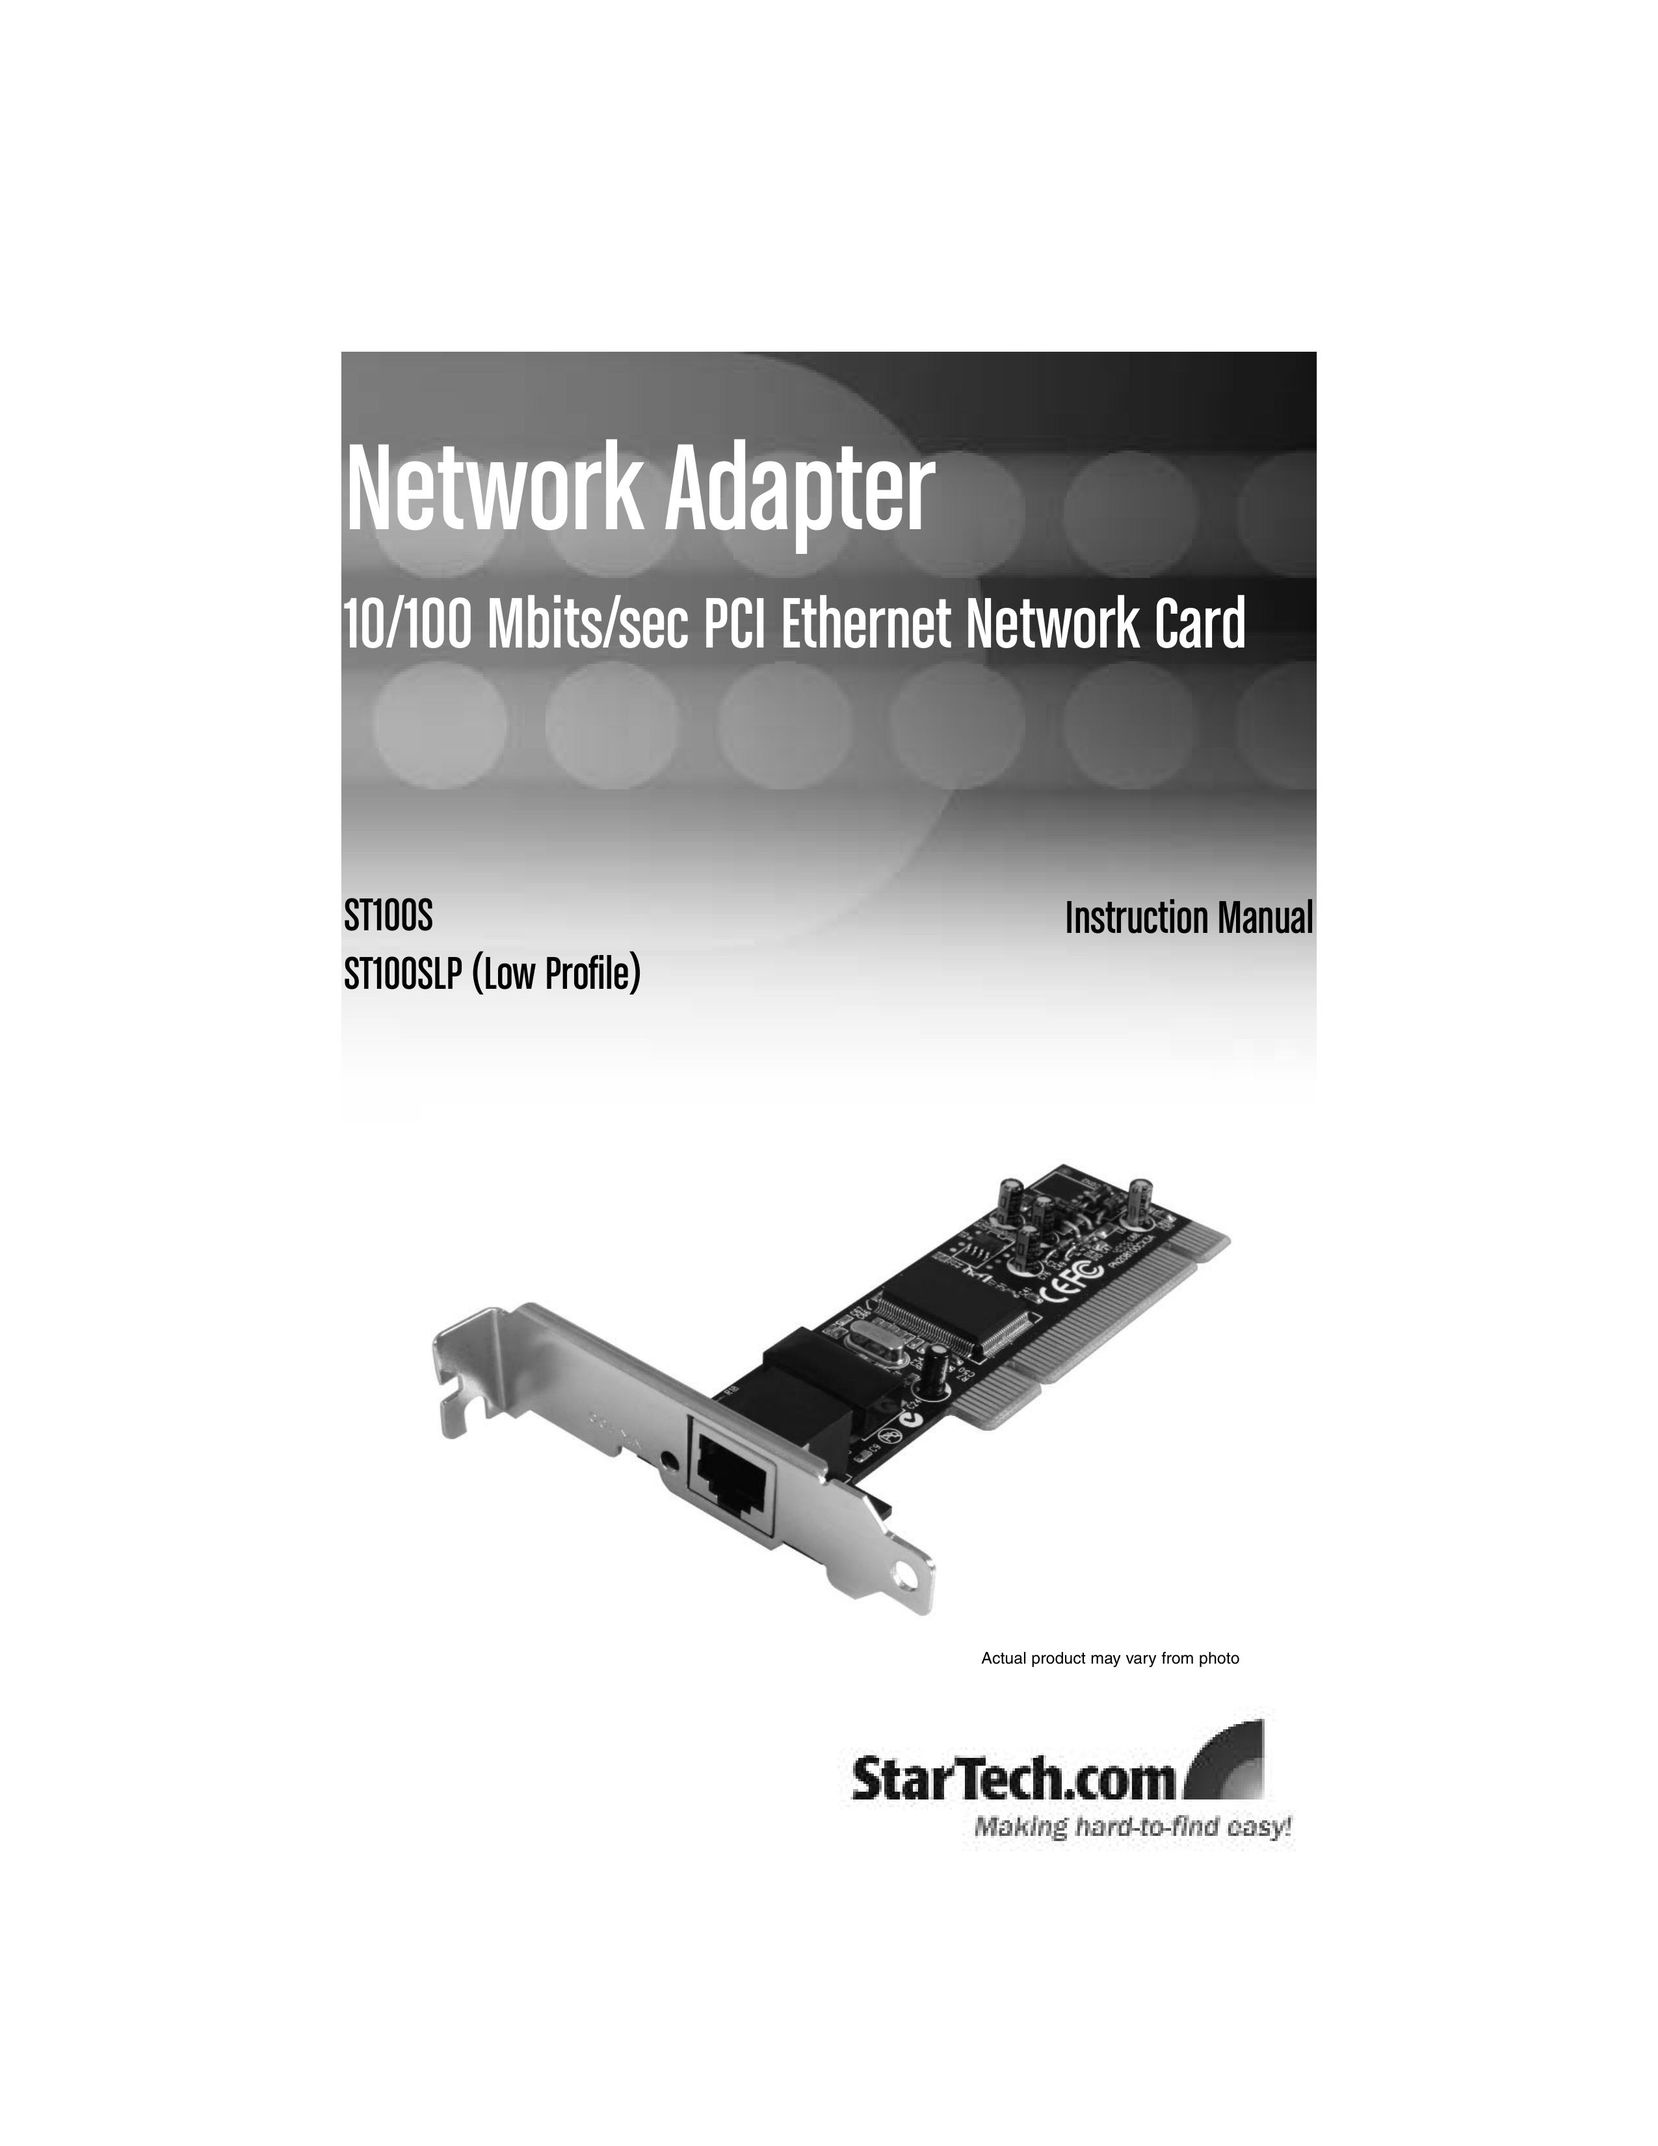 StarTech.com ST100S Network Card User Manual